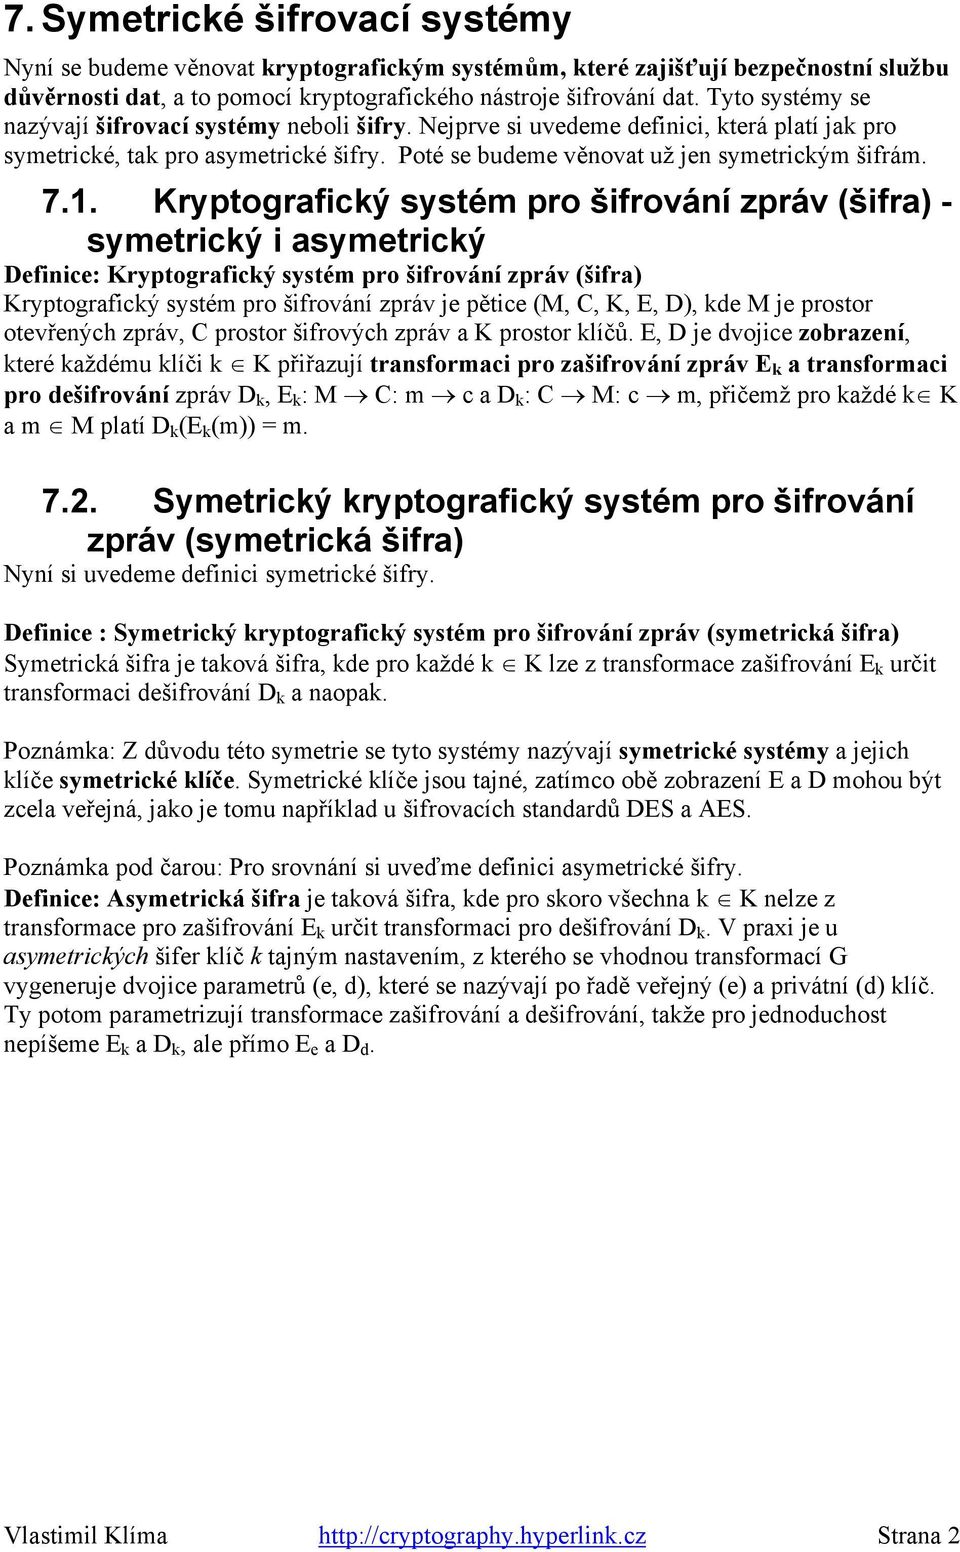 Kryptografický systém pro šifrování zpráv (šifra) - symetrický i asymetrický Definice: Kryptografický systém pro šifrování zpráv (šifra) Kryptografický systém pro šifrování zpráv je pětice (M, C, K,